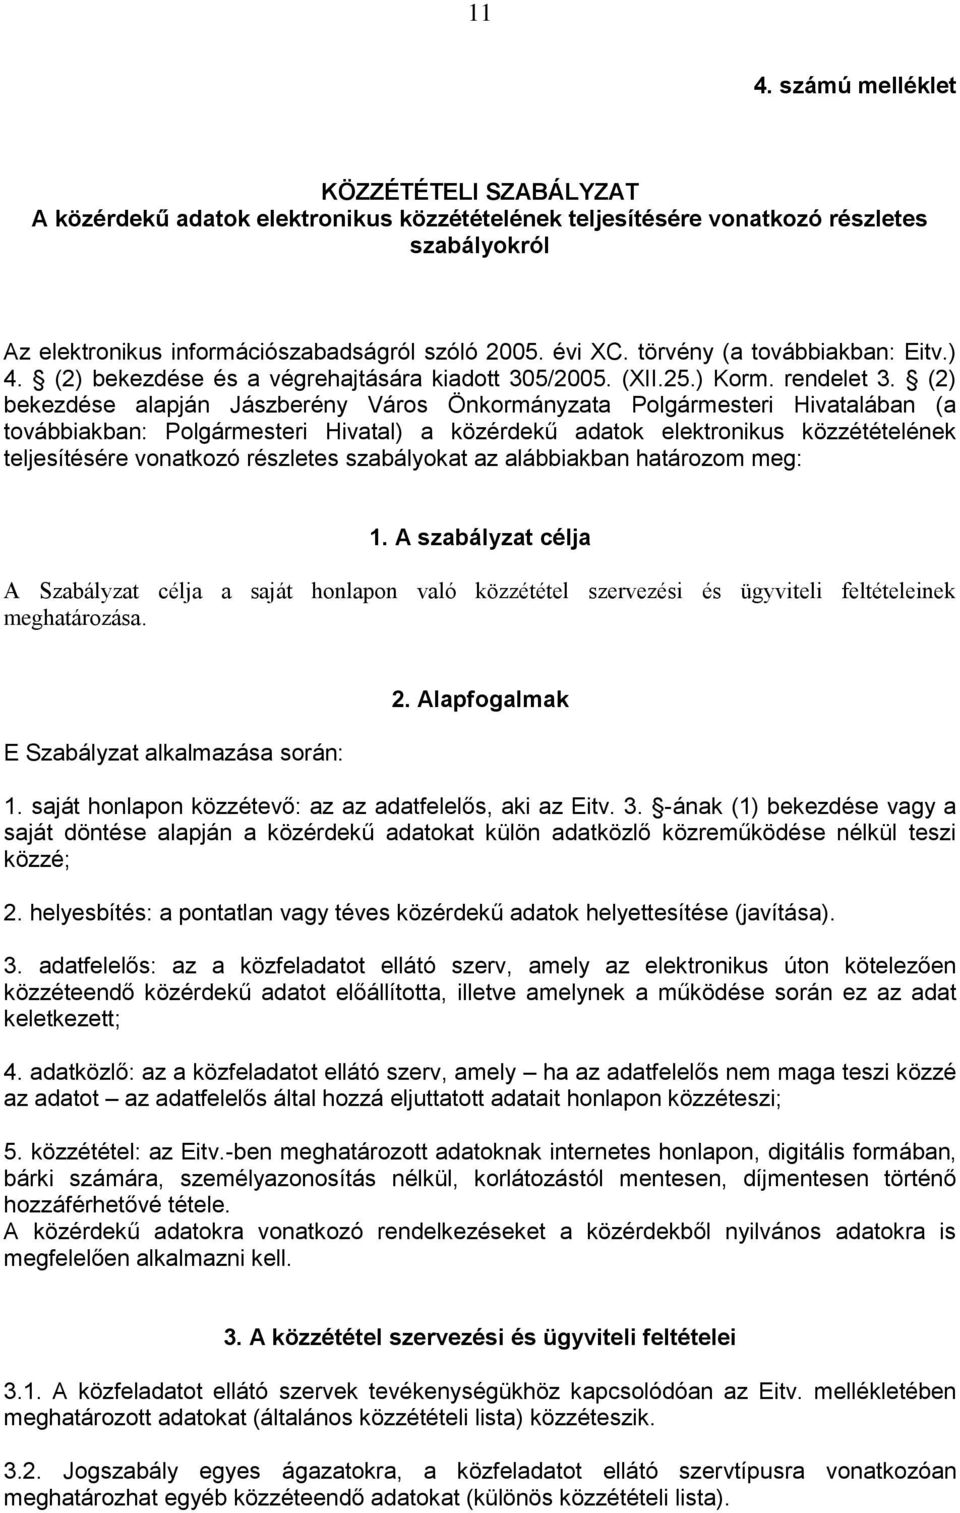 (2) bekezdése alapján Jászberény Város Önkormányzata Polgármesteri Hivatalában (a továbbiakban: Polgármesteri Hivatal) a közérdekű adatok elektronikus közzétételének teljesítésére vonatkozó részletes